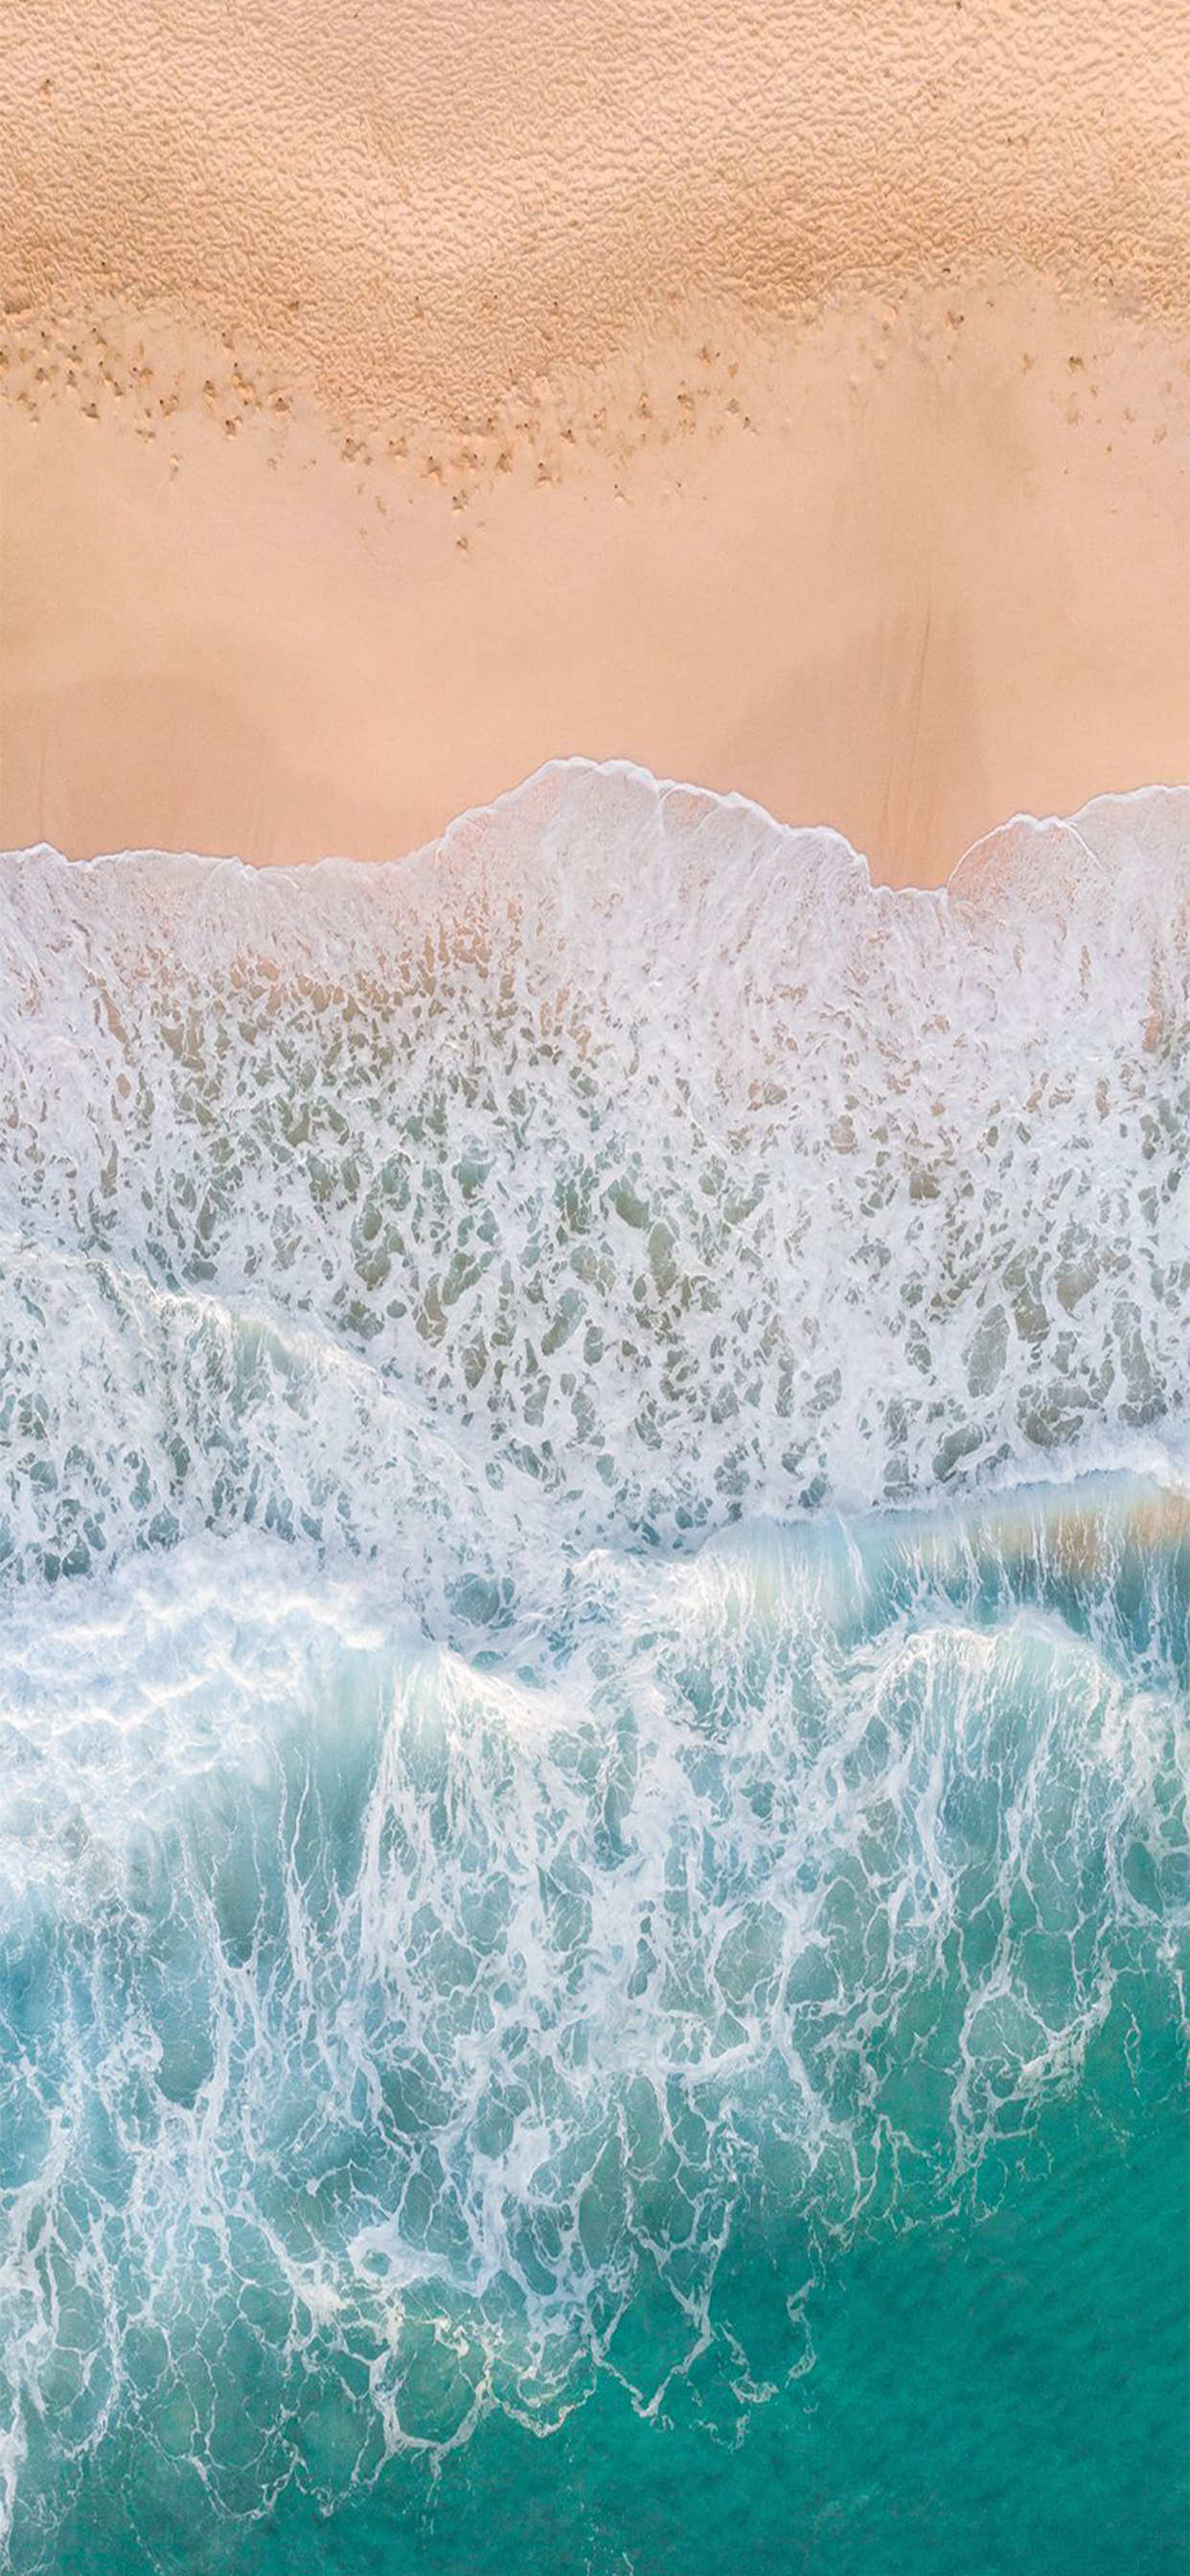 Hãy chiêm ngưỡng những bức ảnh hình nền biển đẹp tuyệt vời trong những ngày hè oi bức. Với những gợn sóng êm đềm, màu nắng vàng ấm áp, bạn sẽ thấy như mình đang thực sự ngồi trên bãi biển ngoài đời thực.